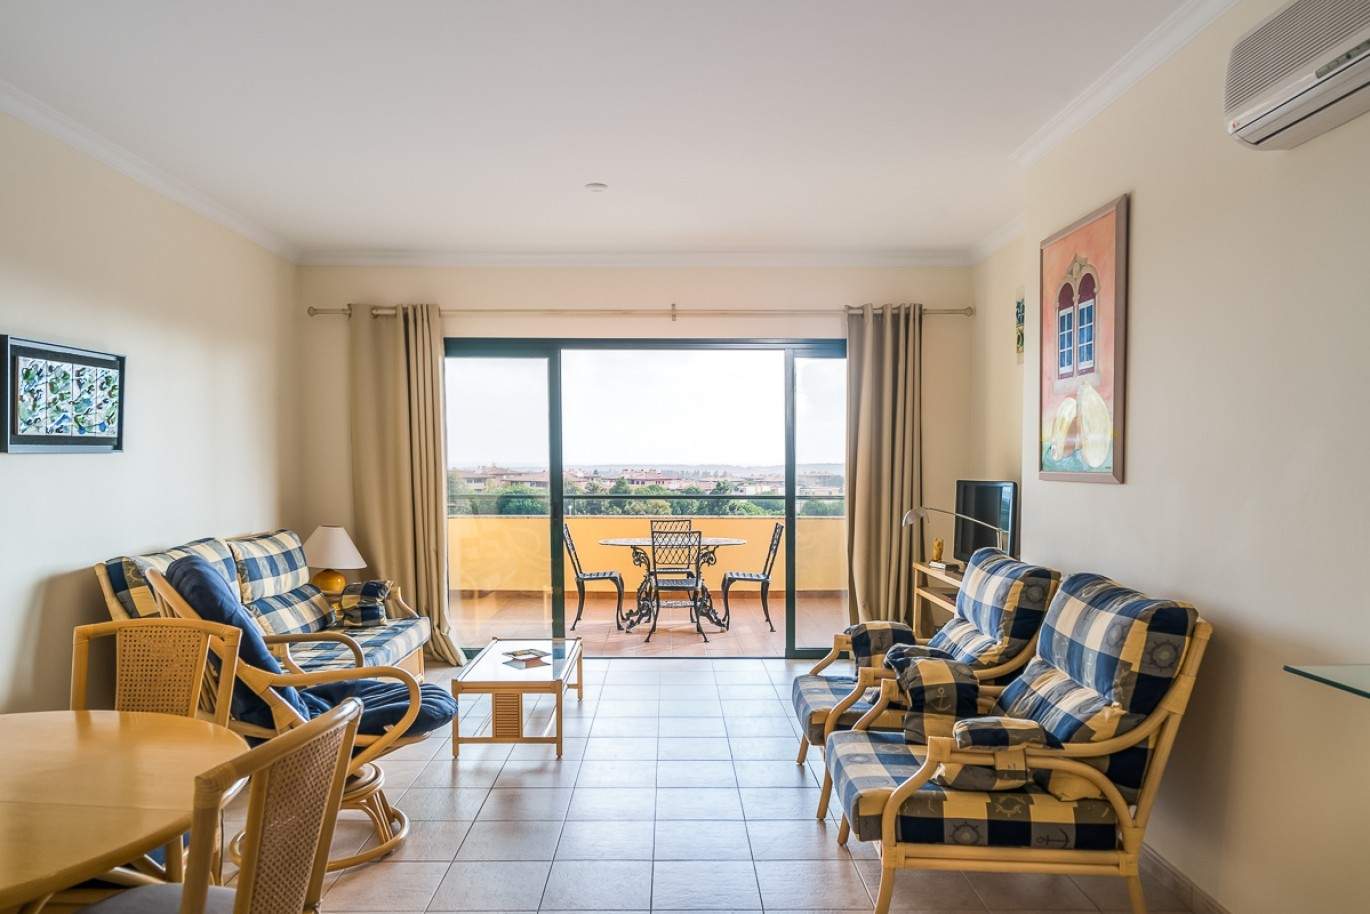 Venda de apartamento com piscina em Vilamoura, Algarve, Portugal_87852